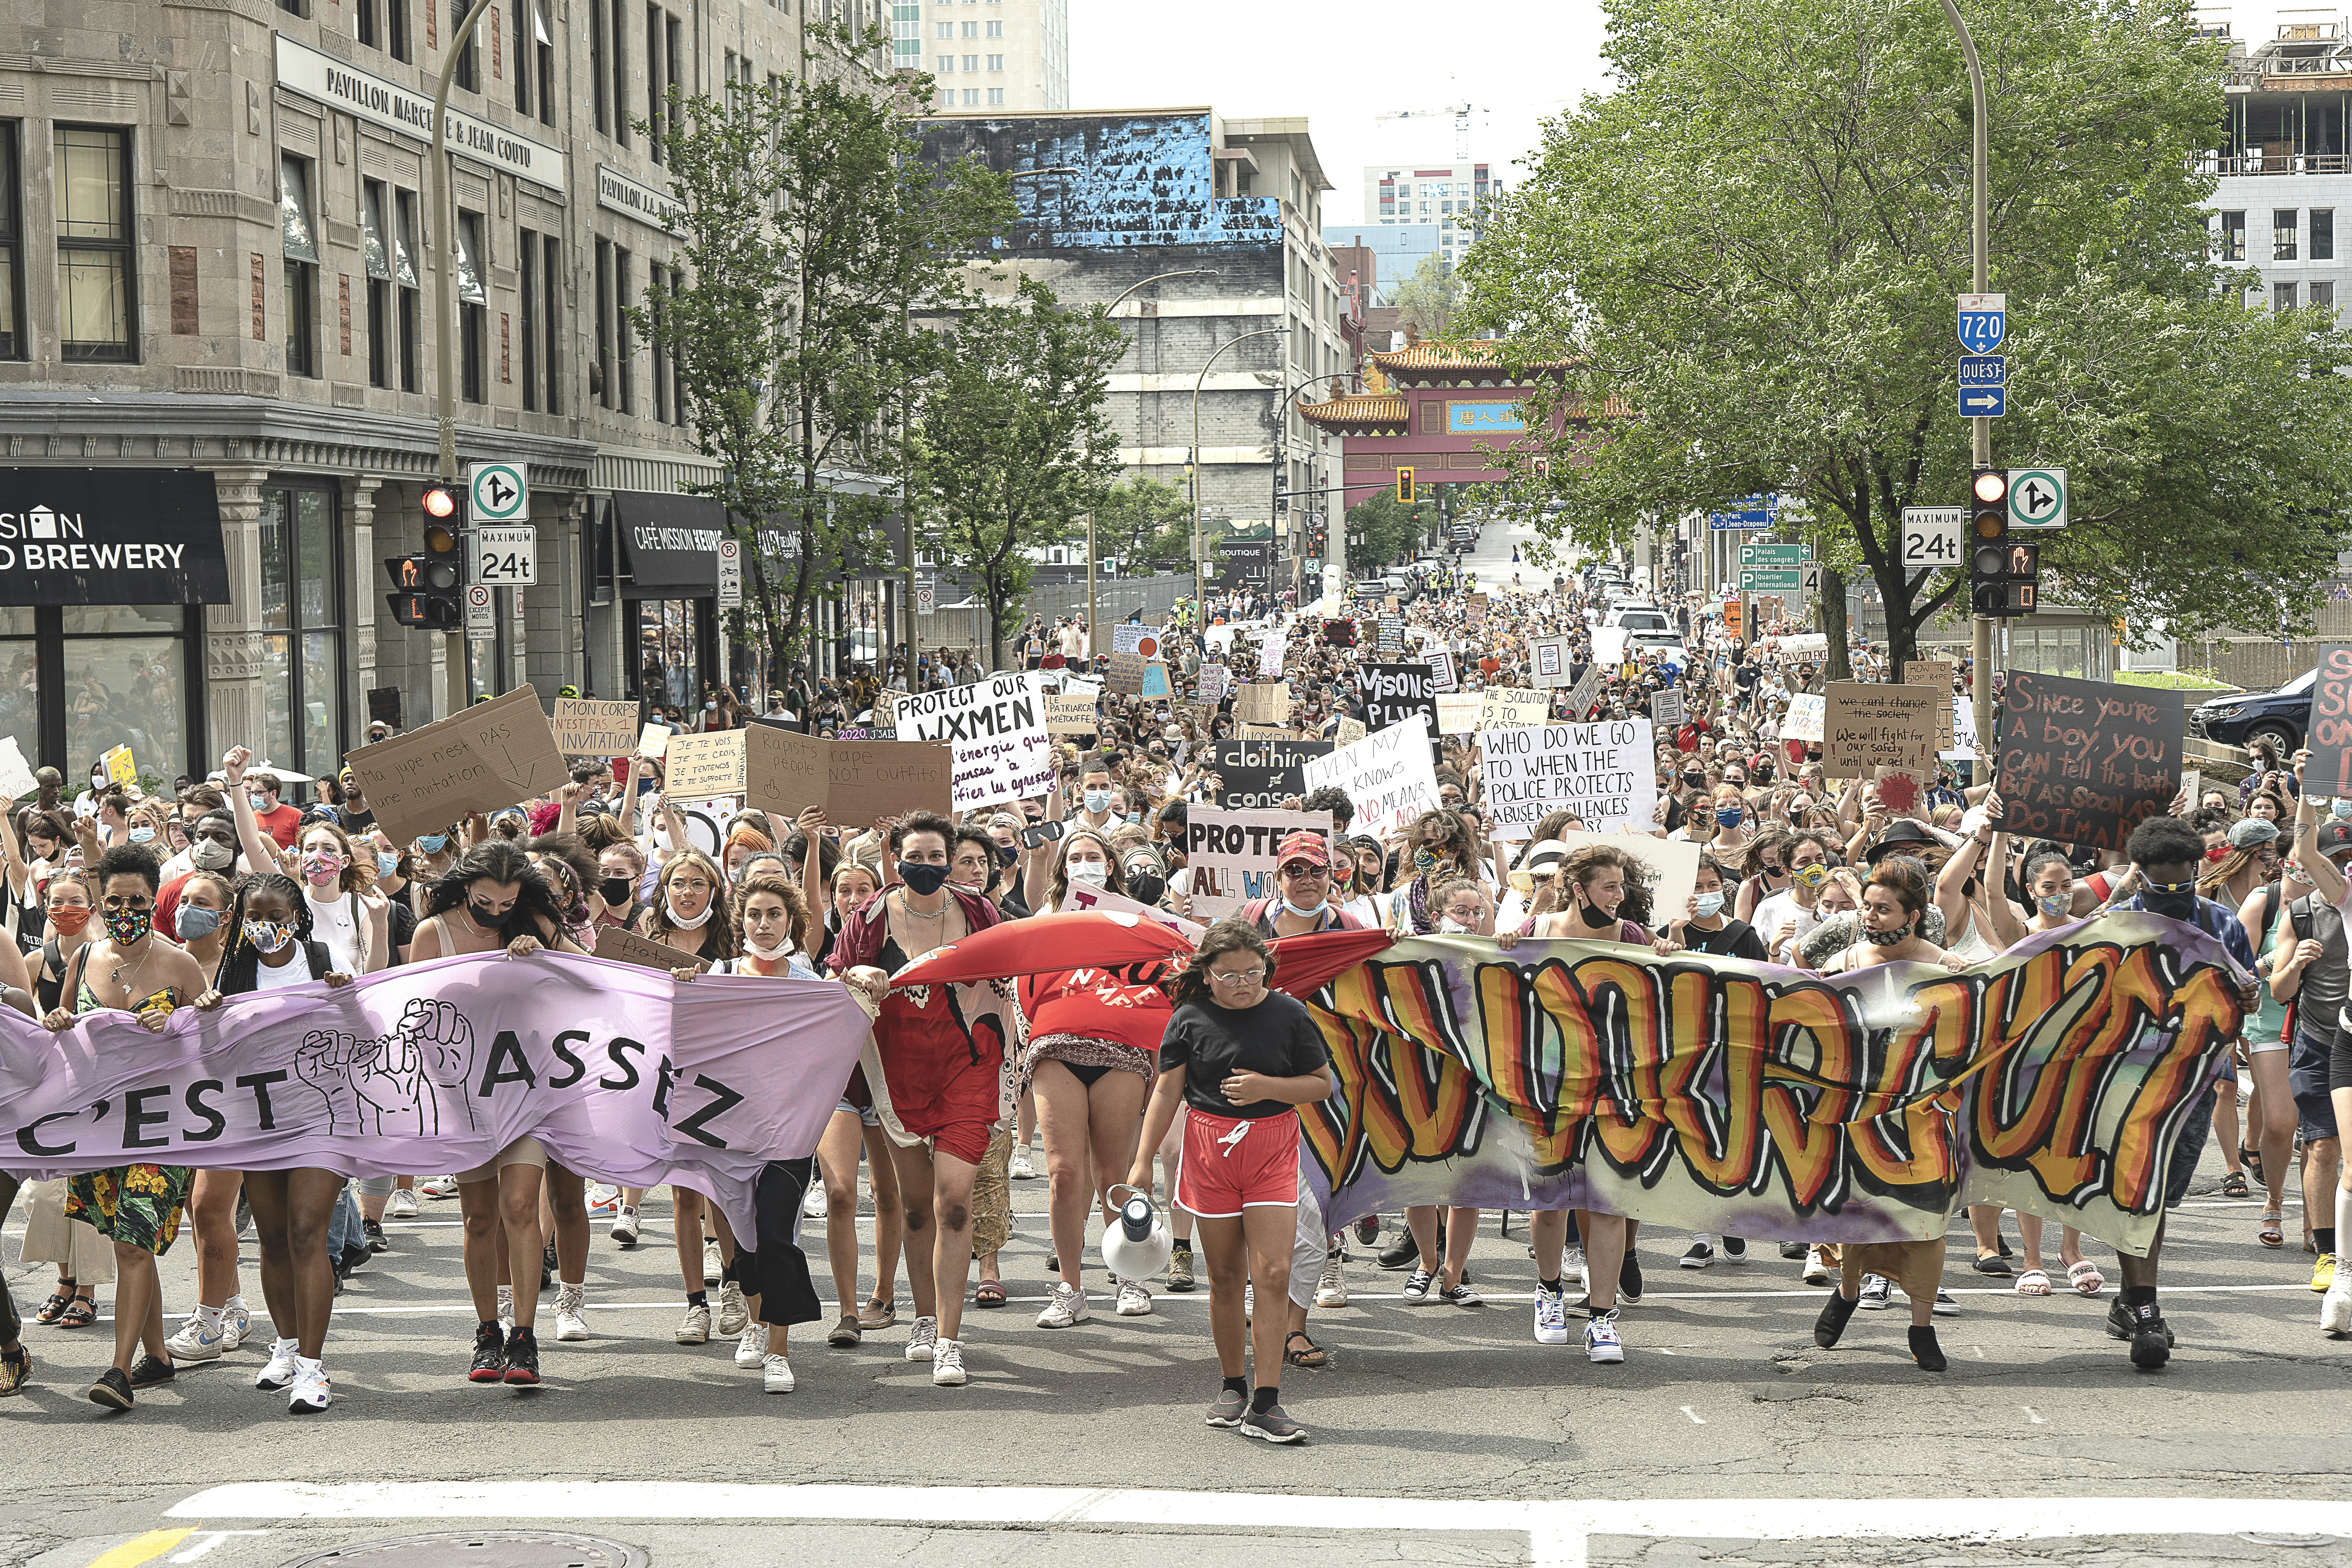 Manifestation contre les agressions sexuelles - dimanche 19 juillet 2020 - Montréal